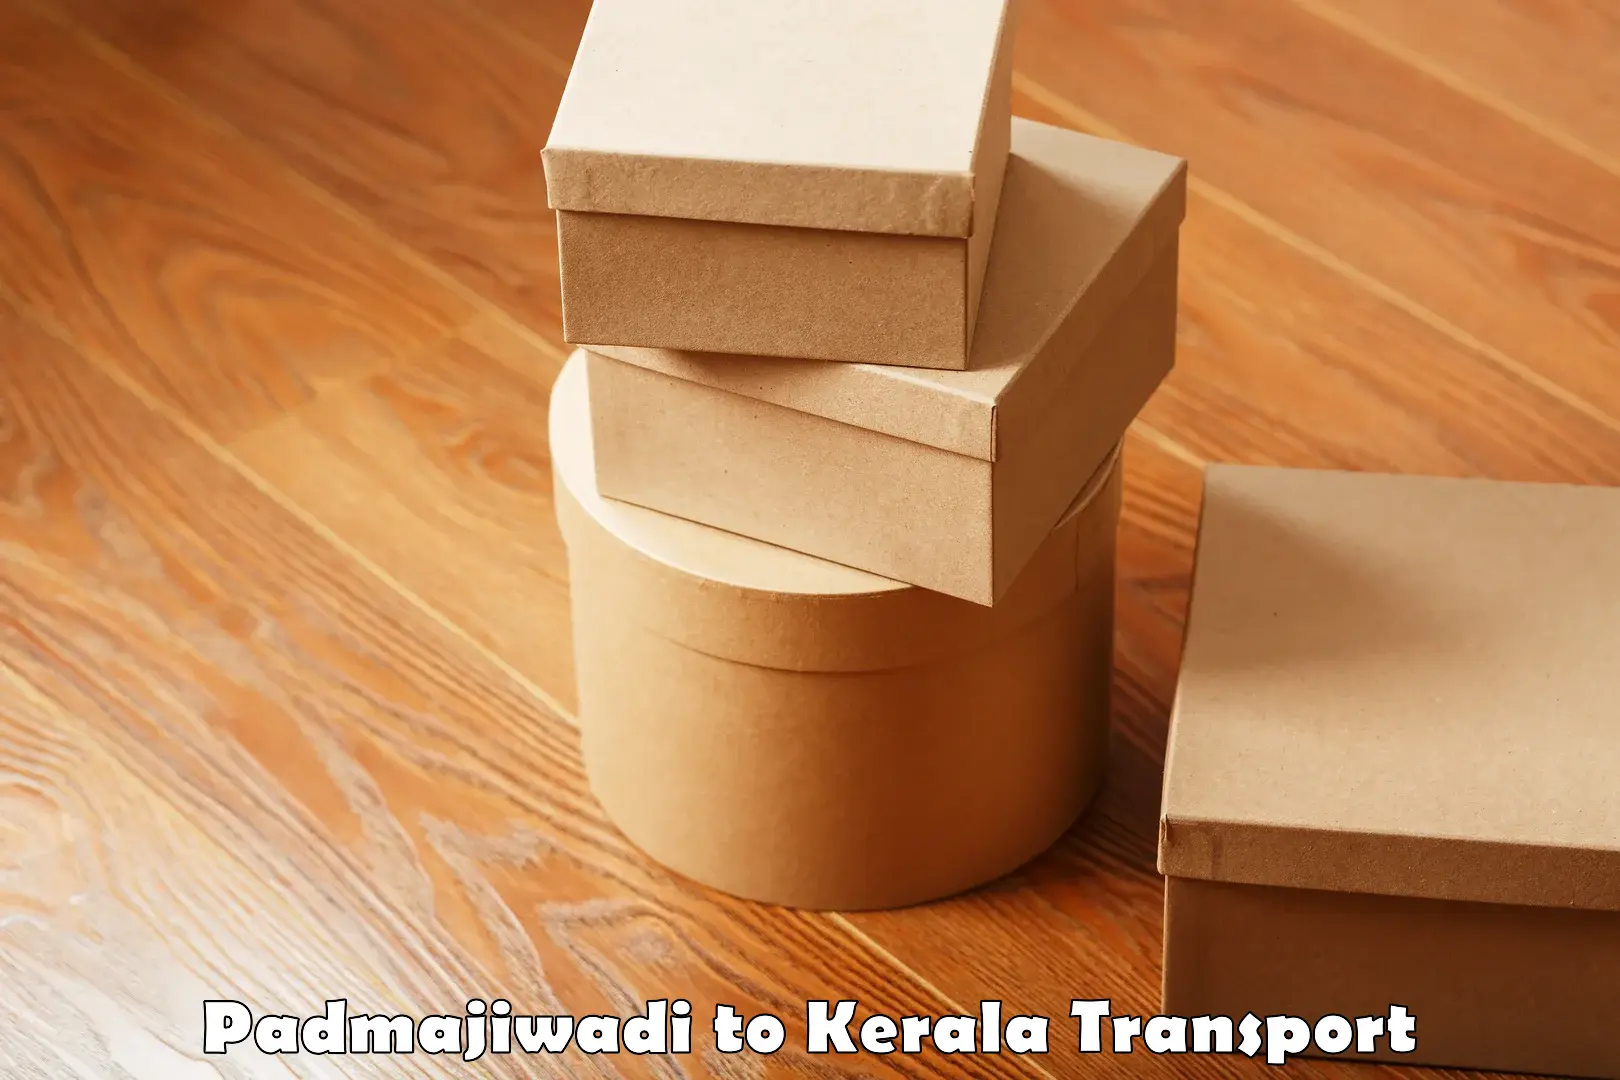 Online transport booking Padmajiwadi to Kerala